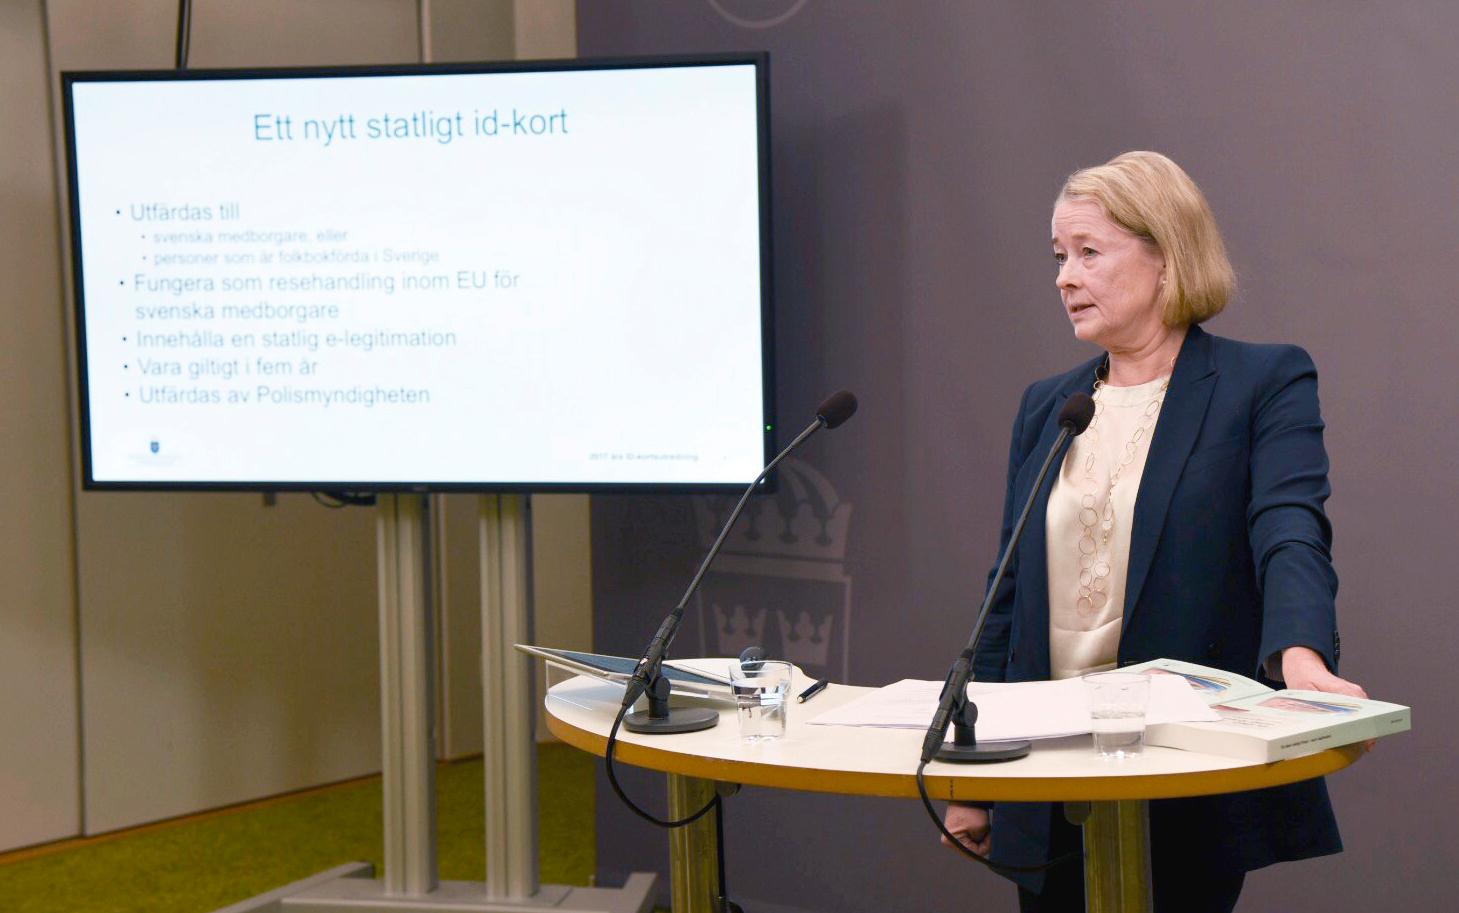 Regeringens id-kortsutredare Inga-Lill Askersjö föreslår ett nytt, säkrare statligt id-kort från 2022 och även att körkort inte längre ska duga som id som nu.